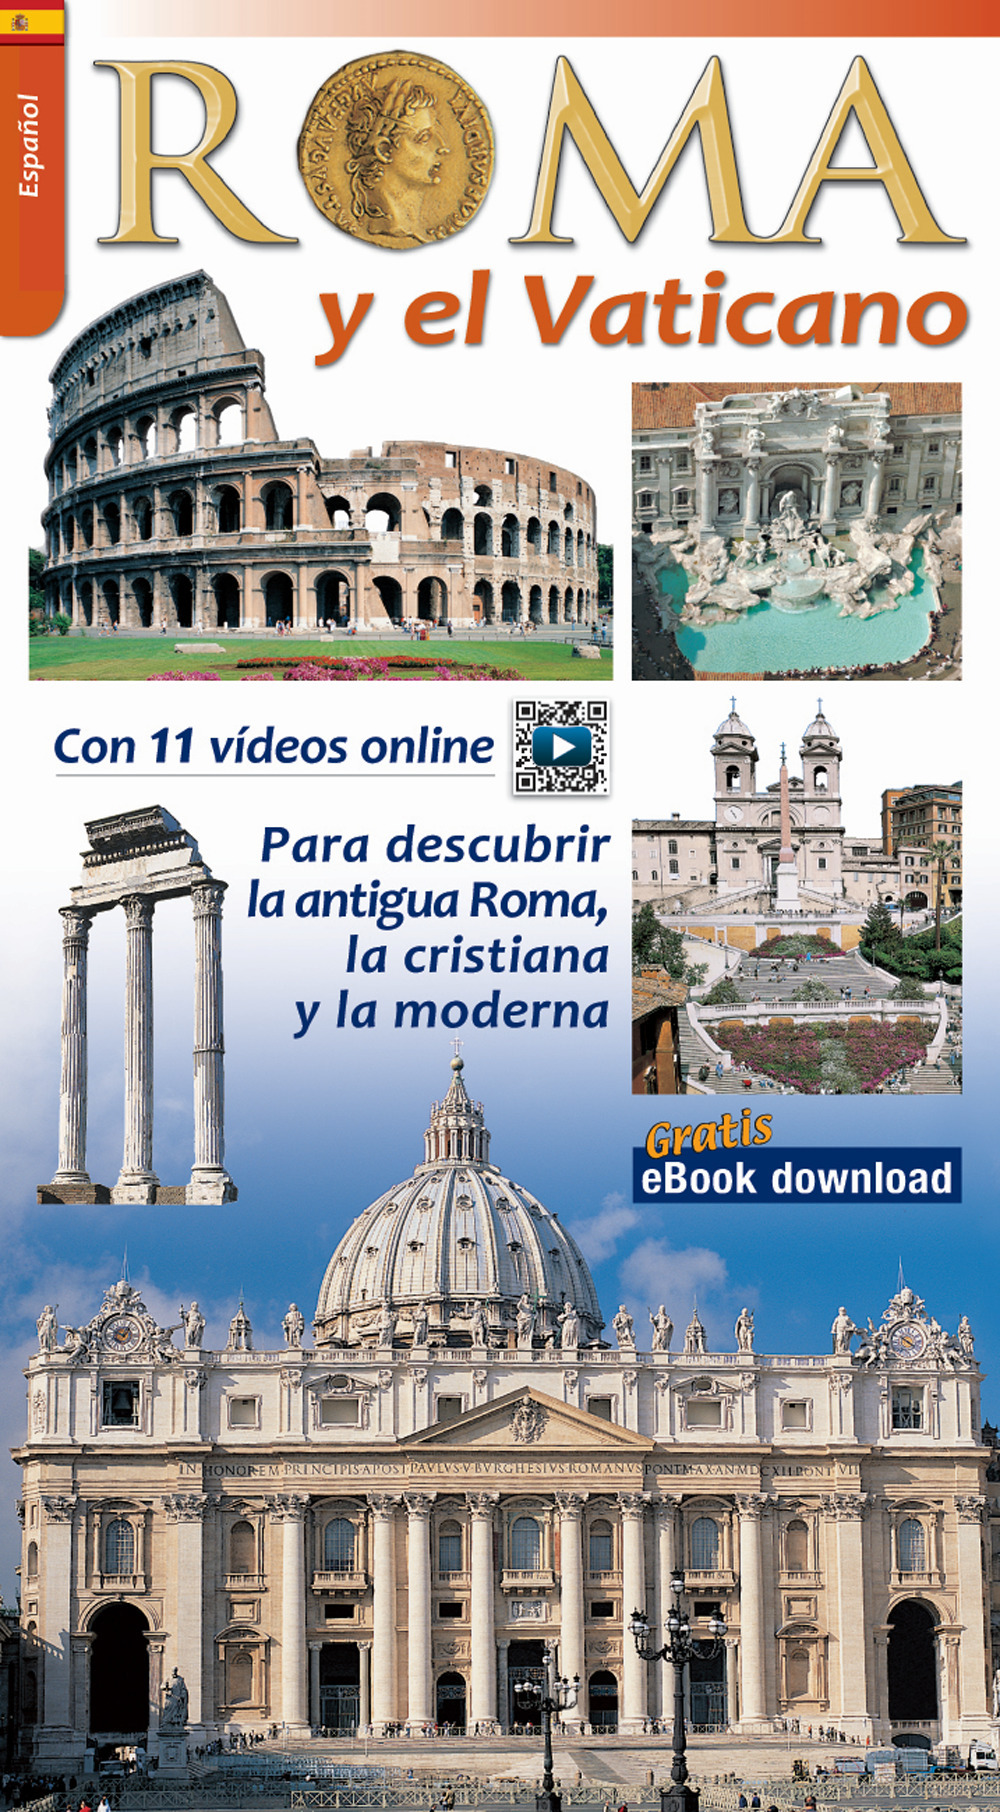 Roma y el Vaticano. Para descubrir la Roma arqueologica y monumental